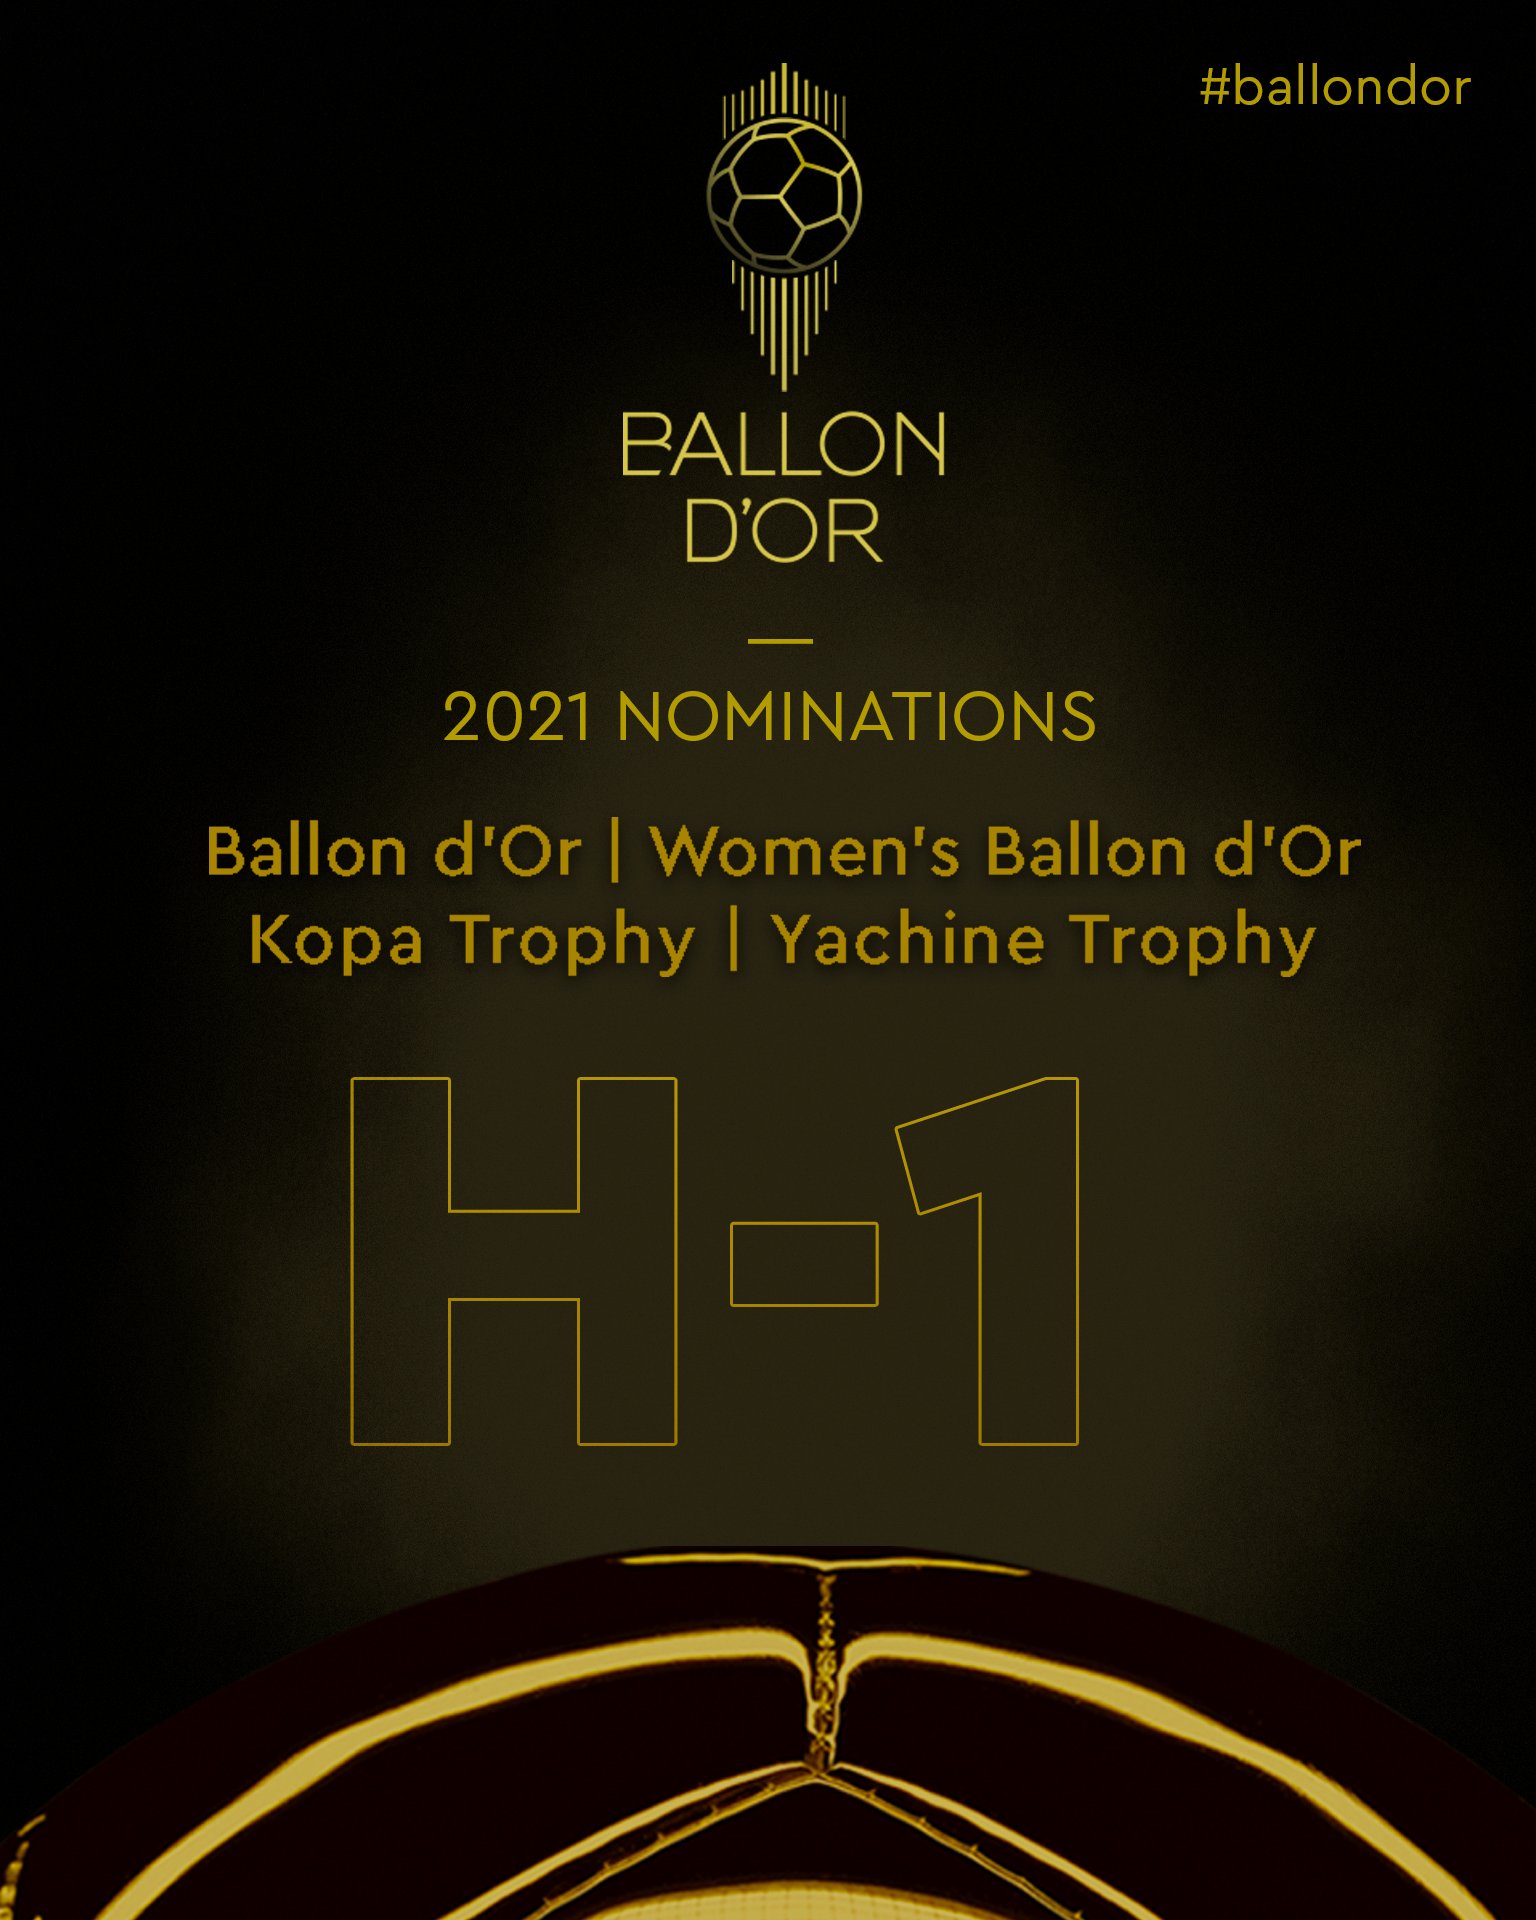 Nomine Lengkap Ballon d'Or 2021: Lionel Messi dan Cristiano Ronaldo Masuk Daftar